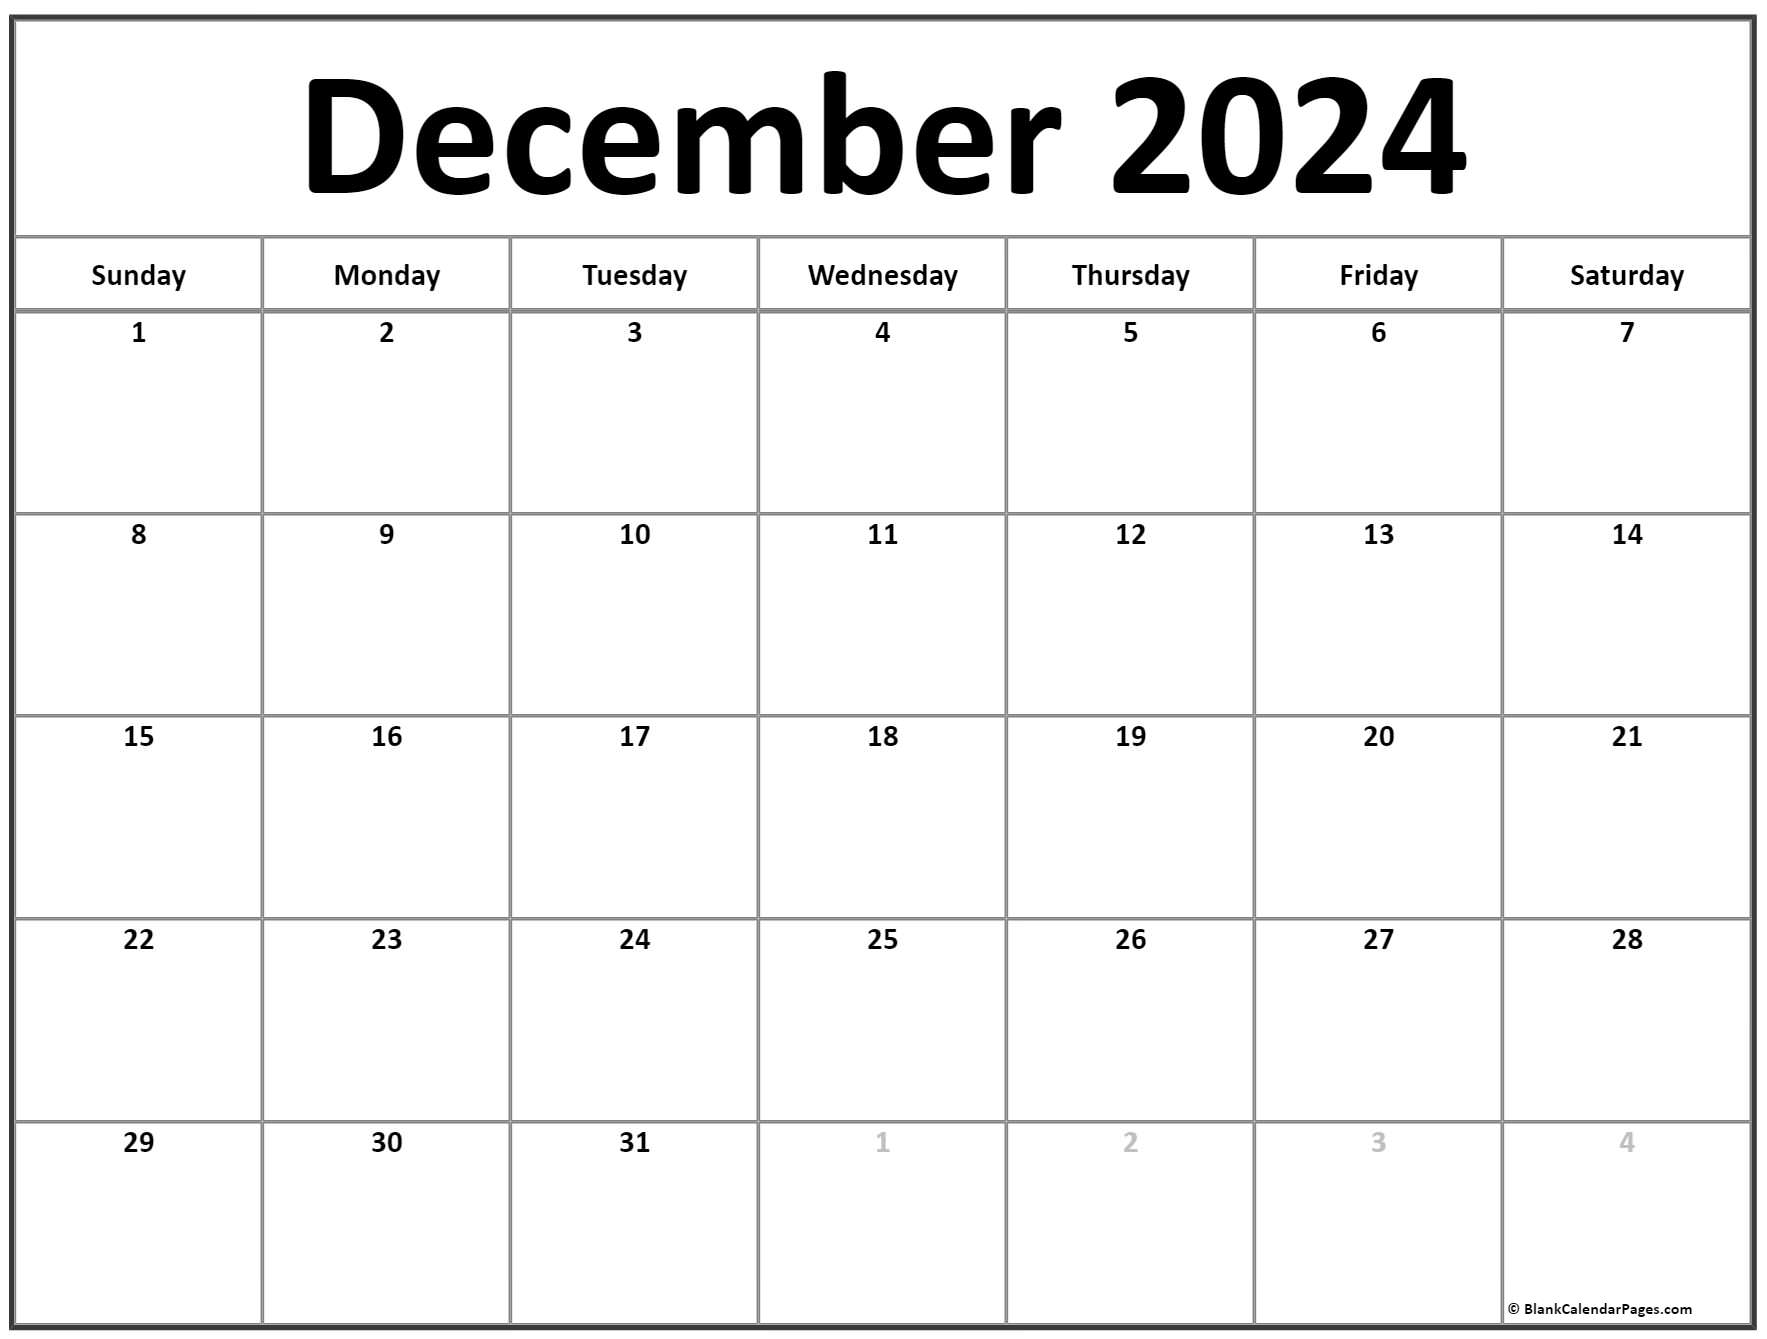 december-2022-editable-calendar-with-holidays